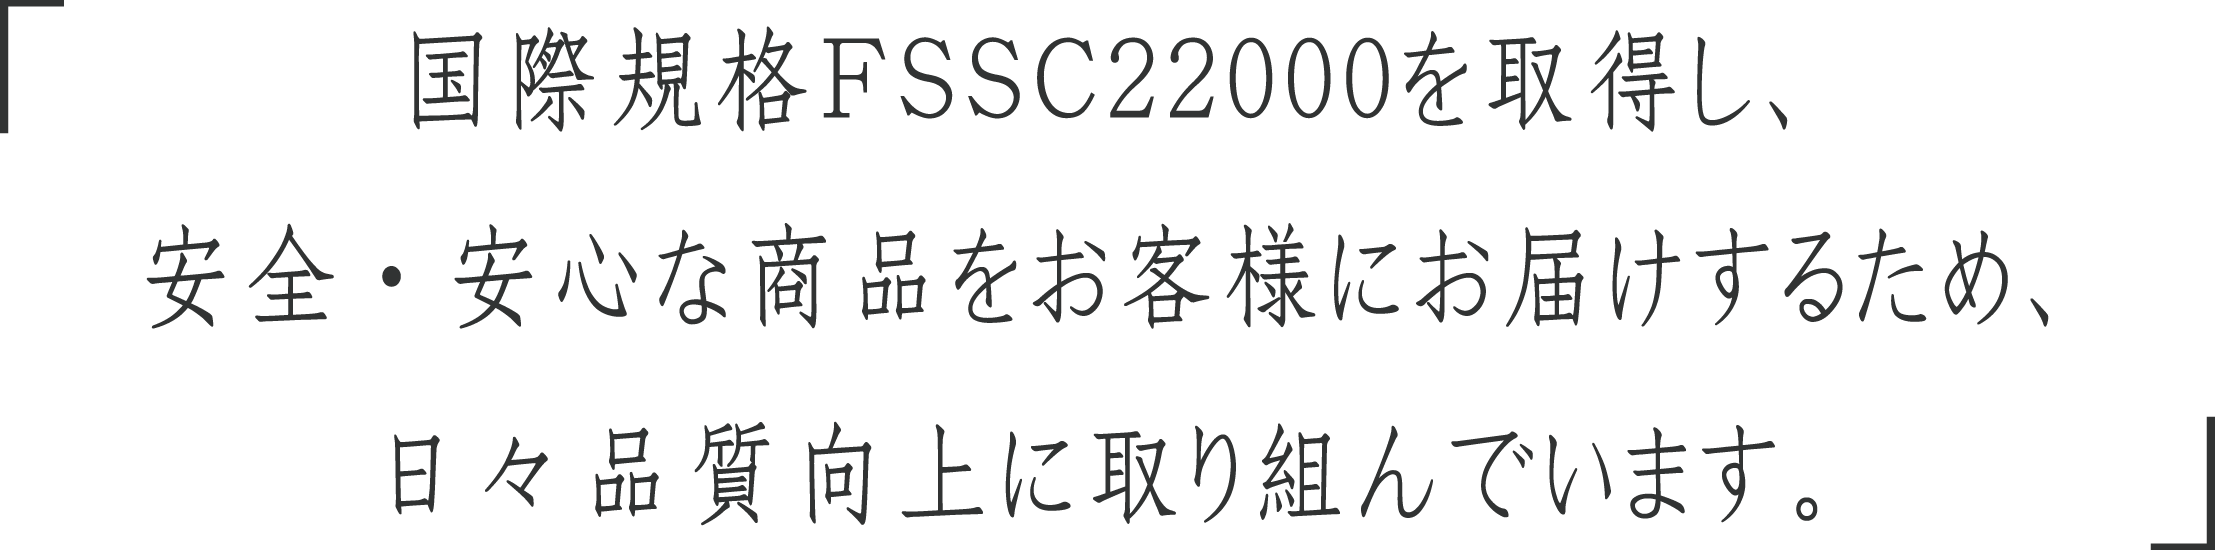 国際規格FSSD22000を取得